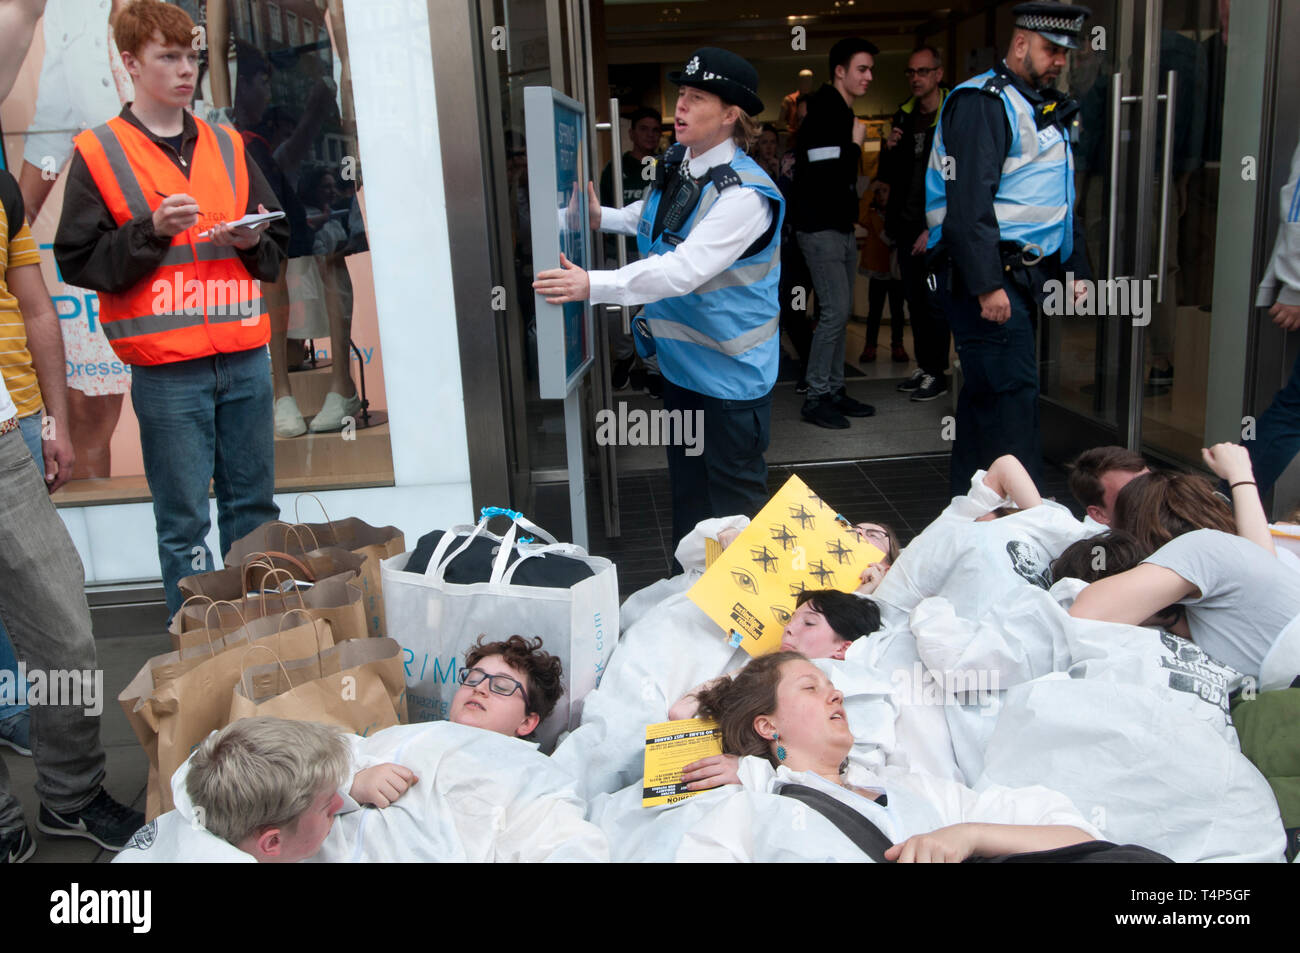 Rébellion Extinction protestation, Londres 17 septembre 2019. Oxford Circus. Les jeunes meurent dans l'étape de port haz chem suits devant les magasins de dessiner Banque D'Images